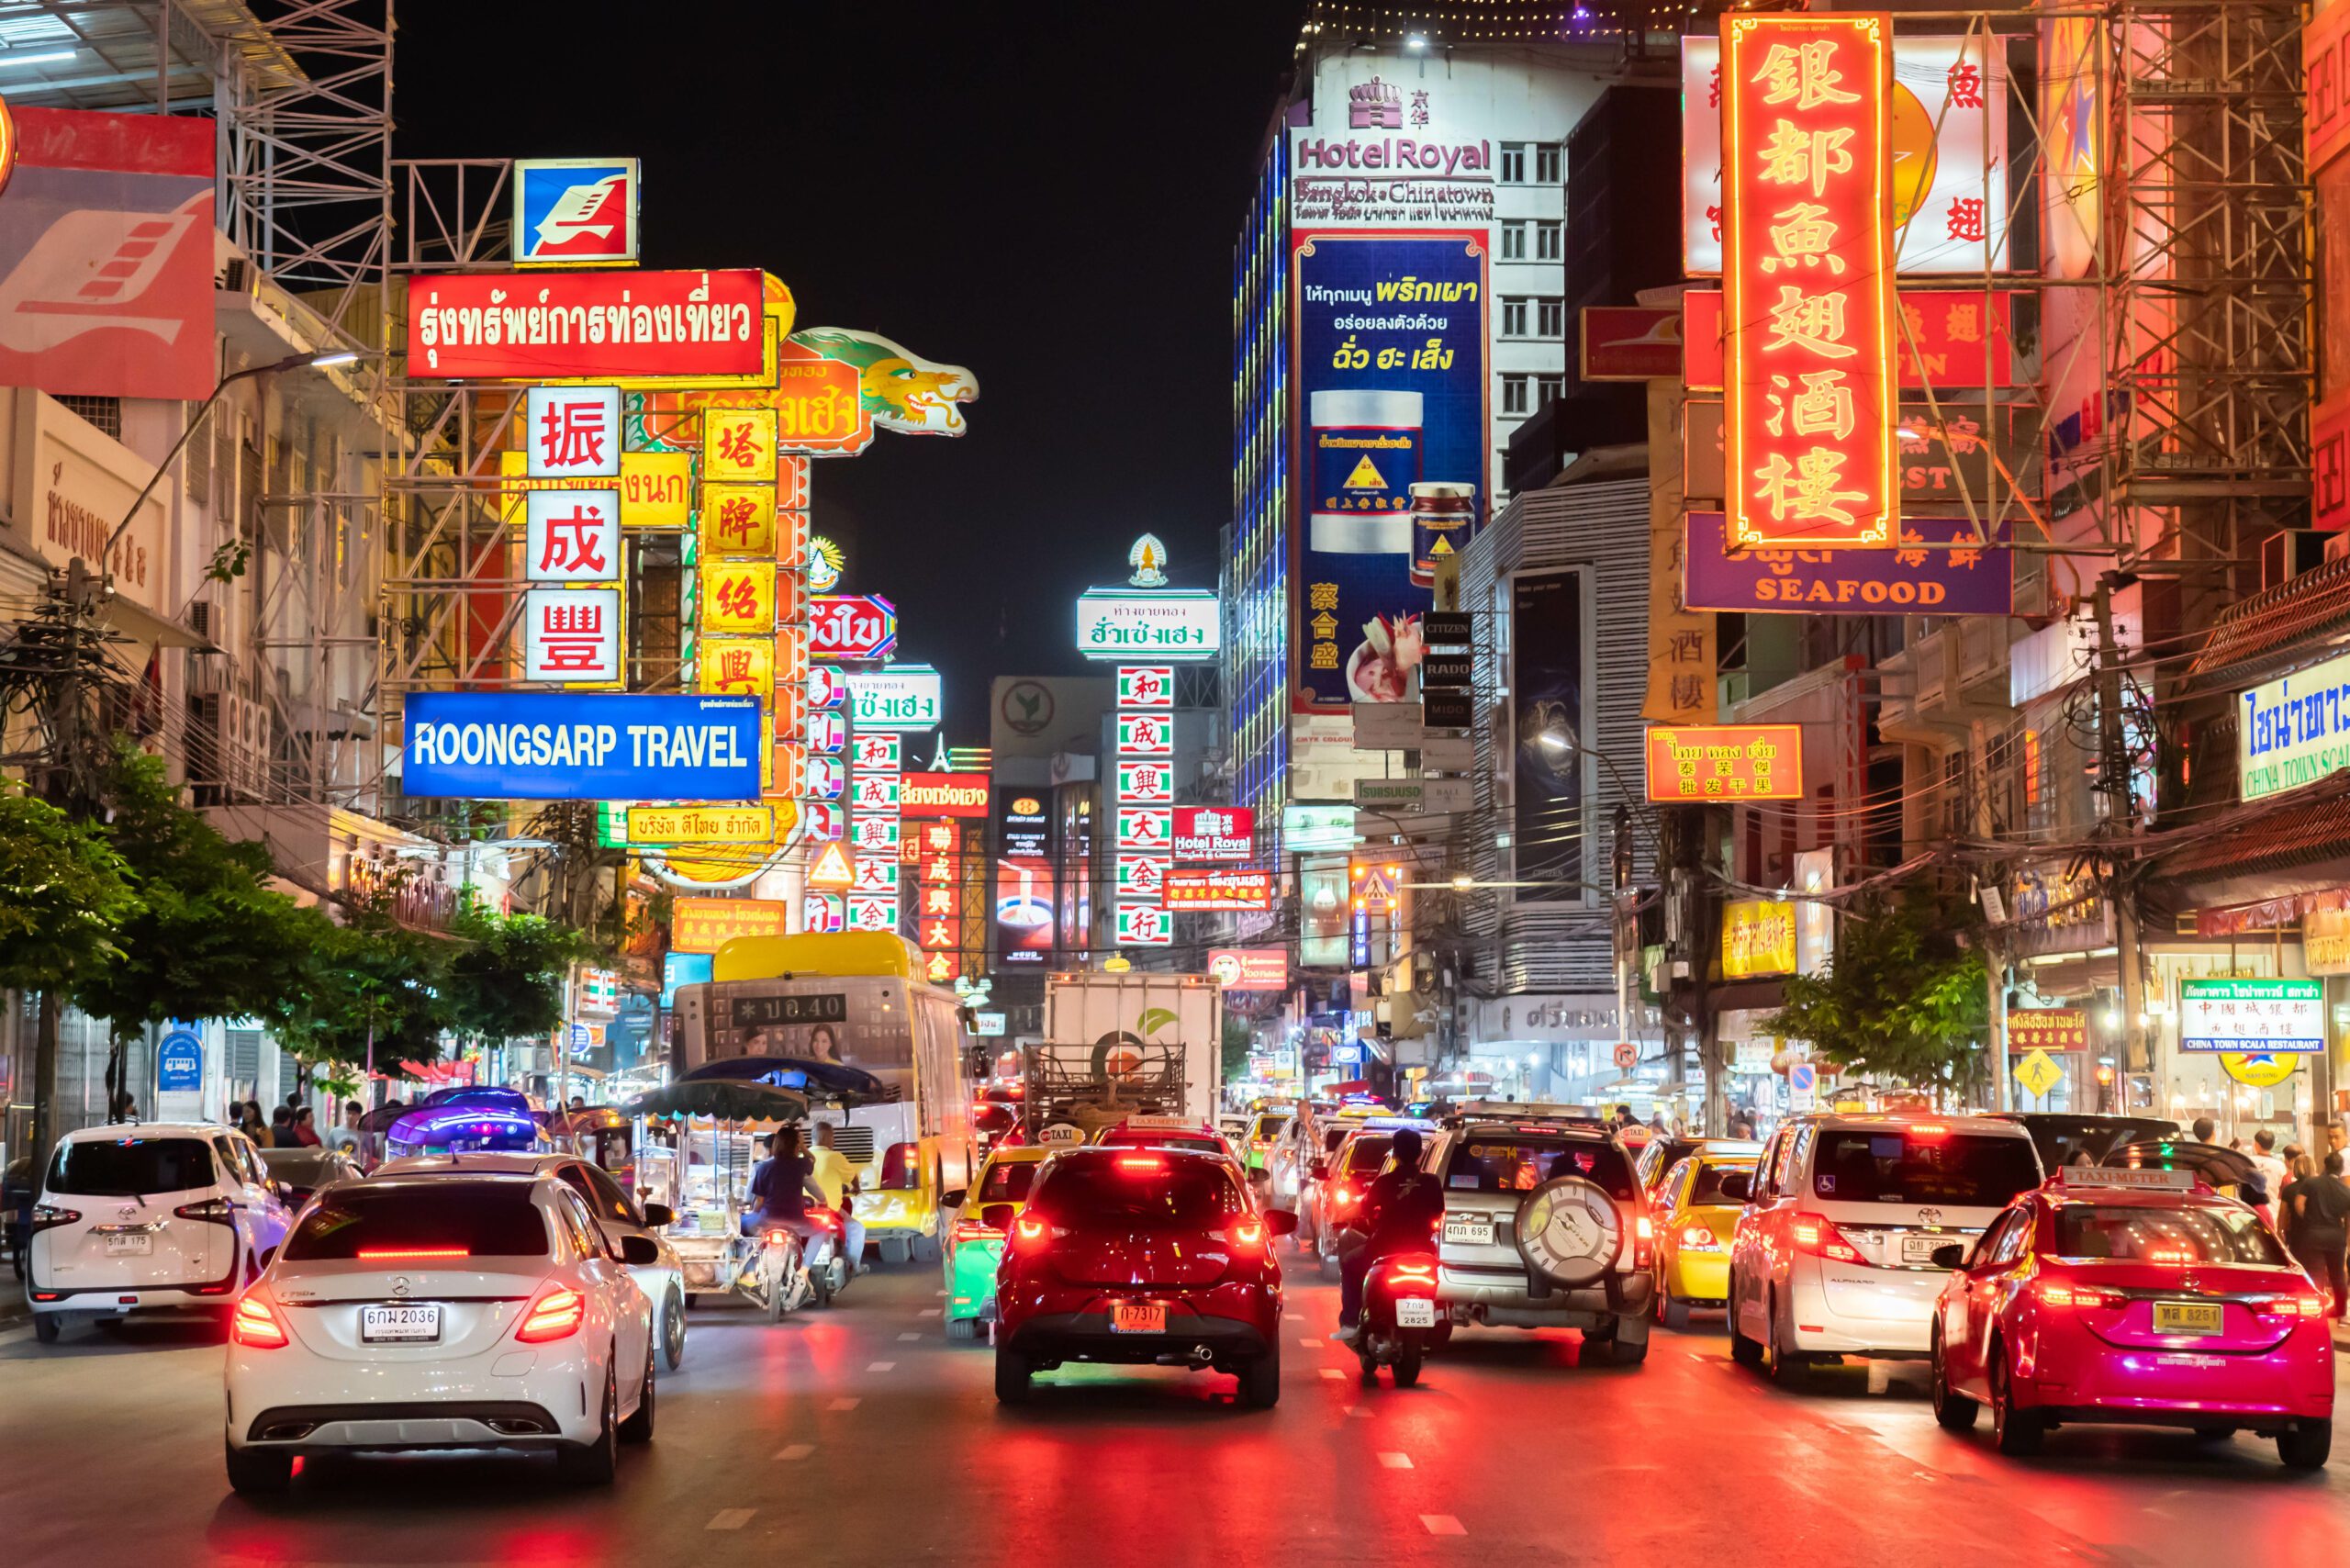 Bangkok streets at night with neon signs.